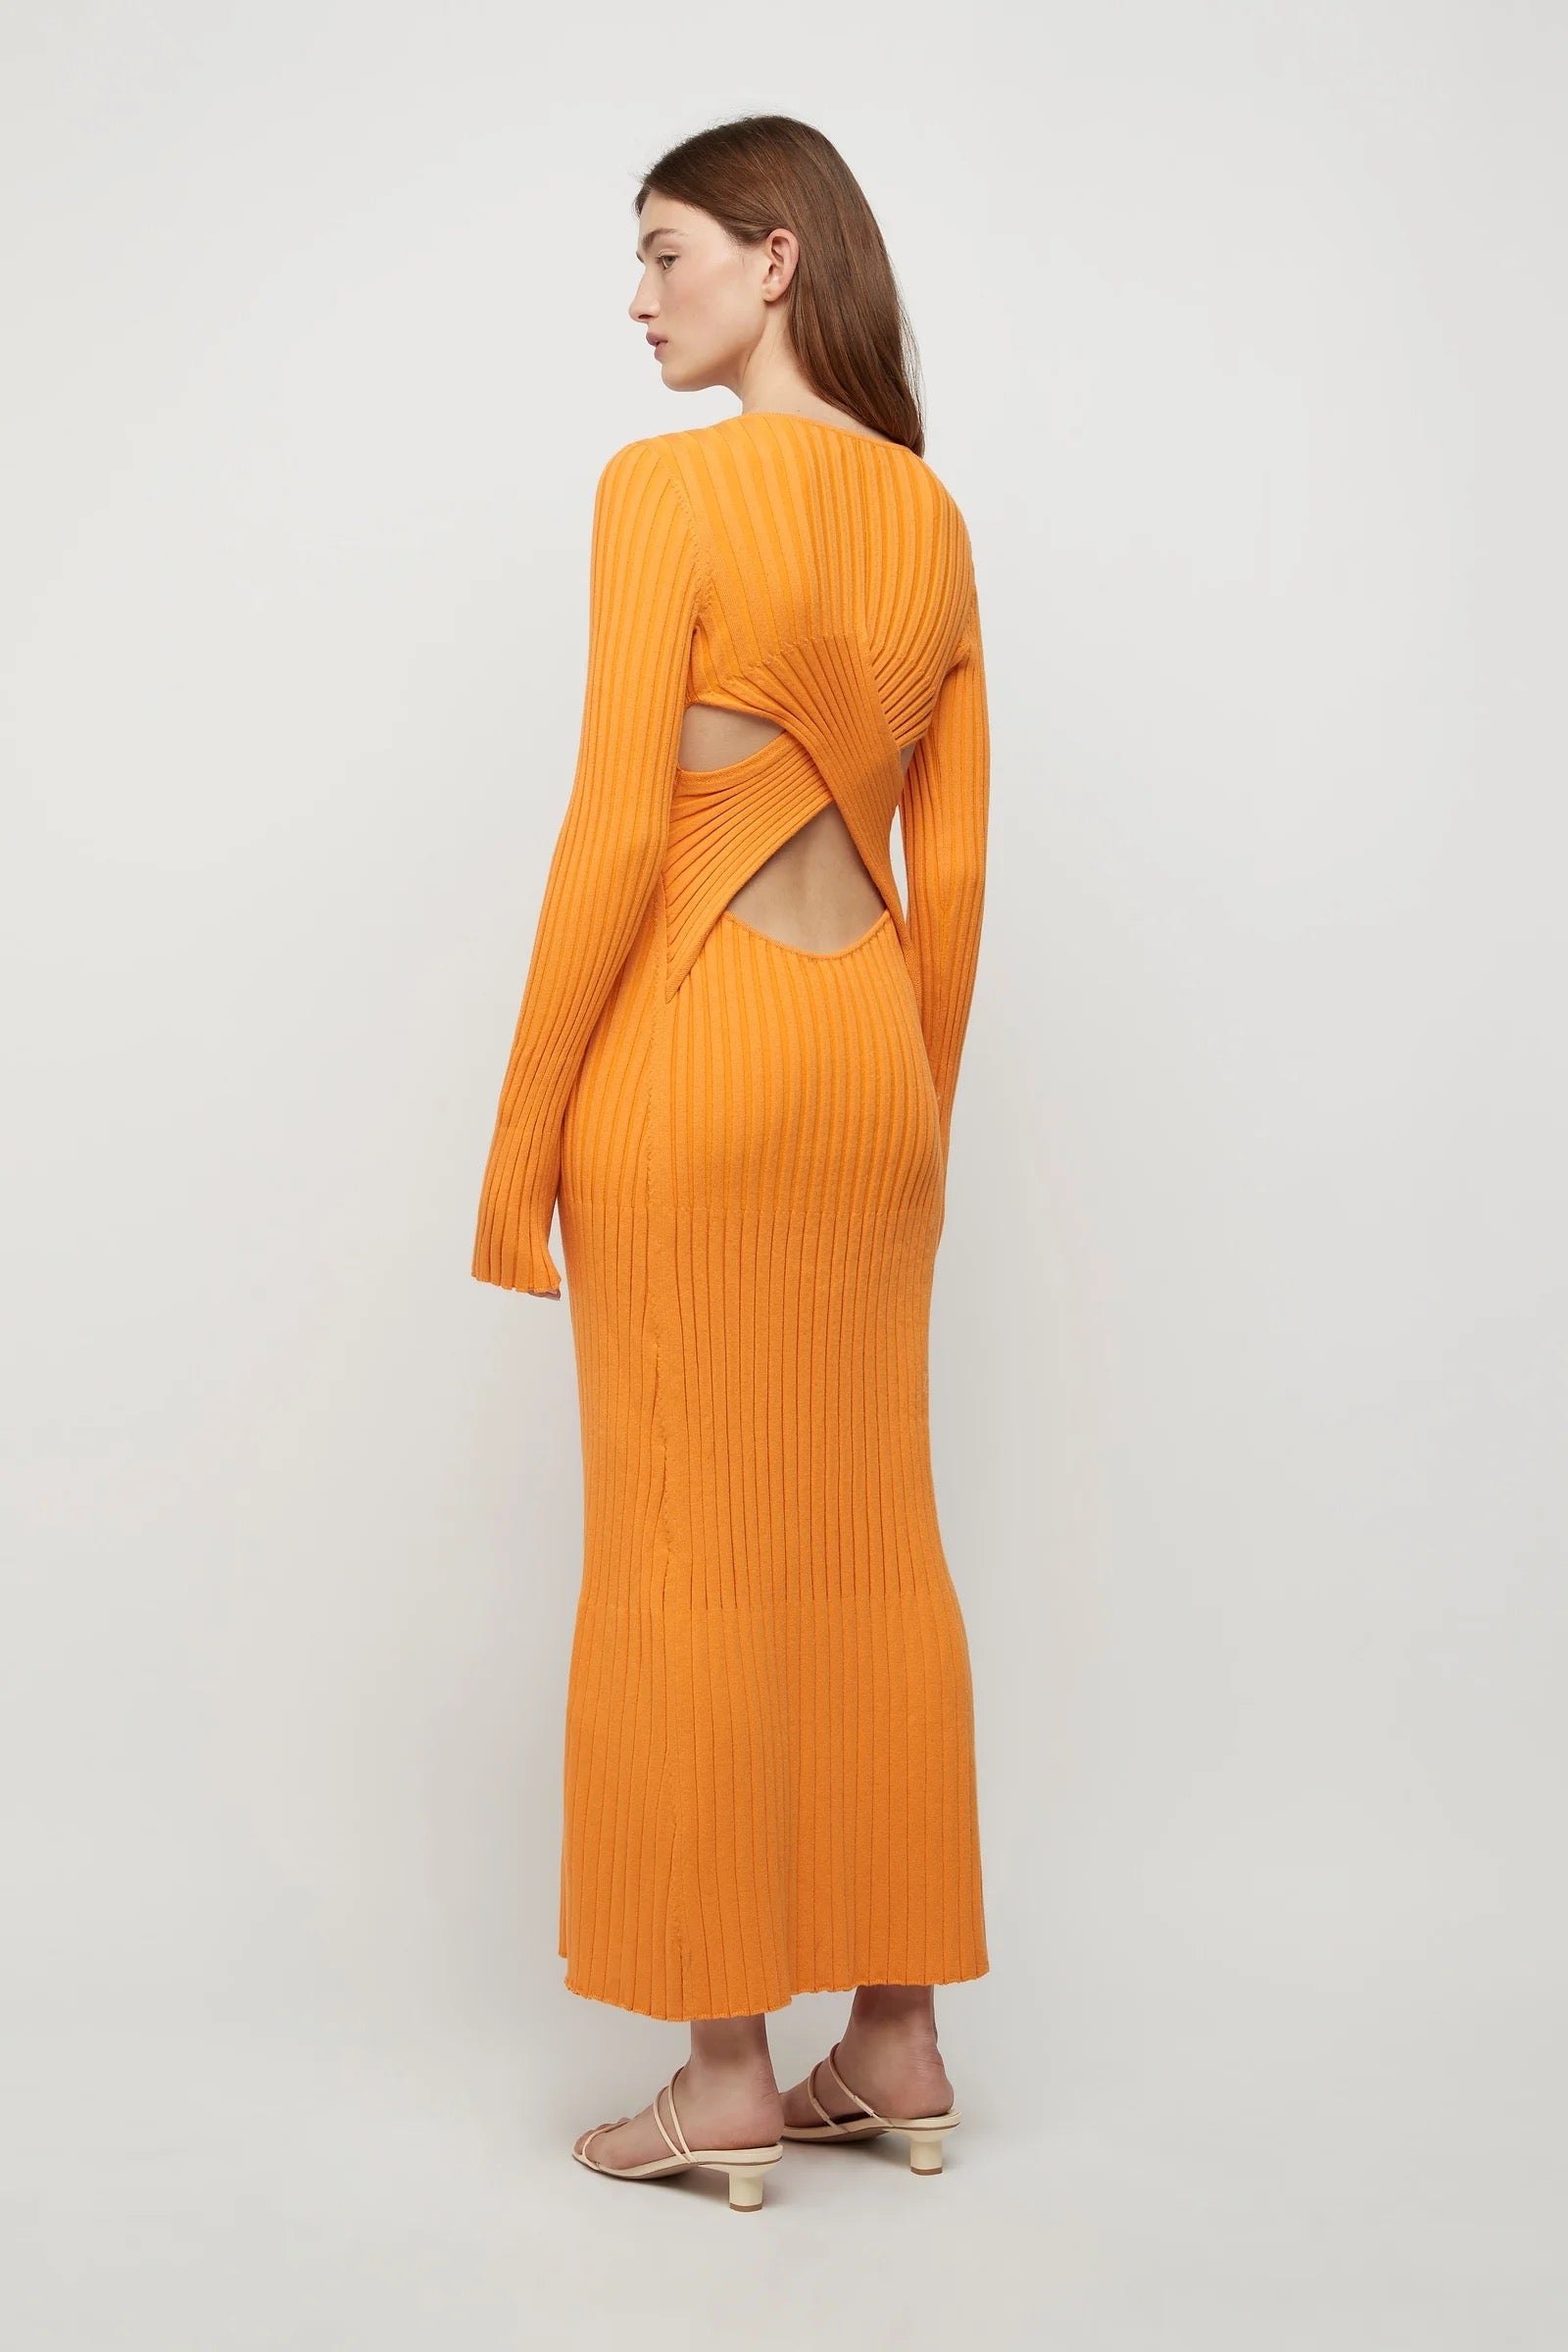 Lowry Cross-Back Knit Dress Tangerine